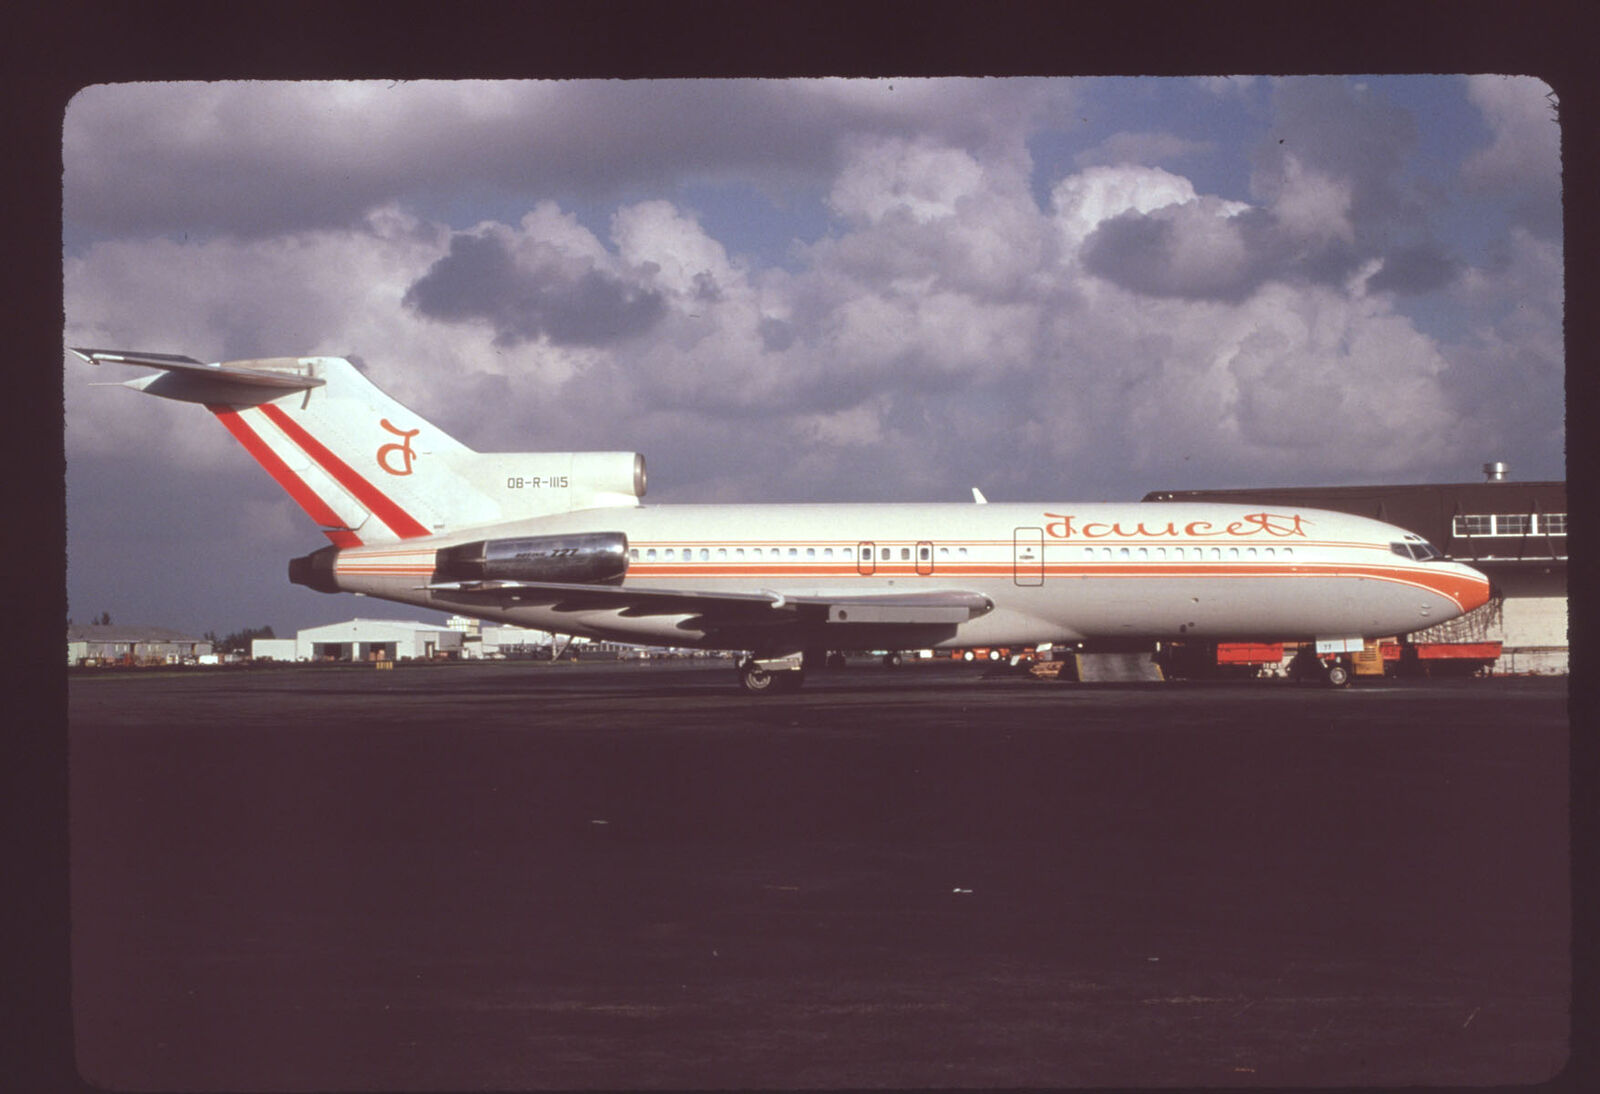 Dupe 35mm airline slide Faucett 727-100C OB-R-1115 [3121]